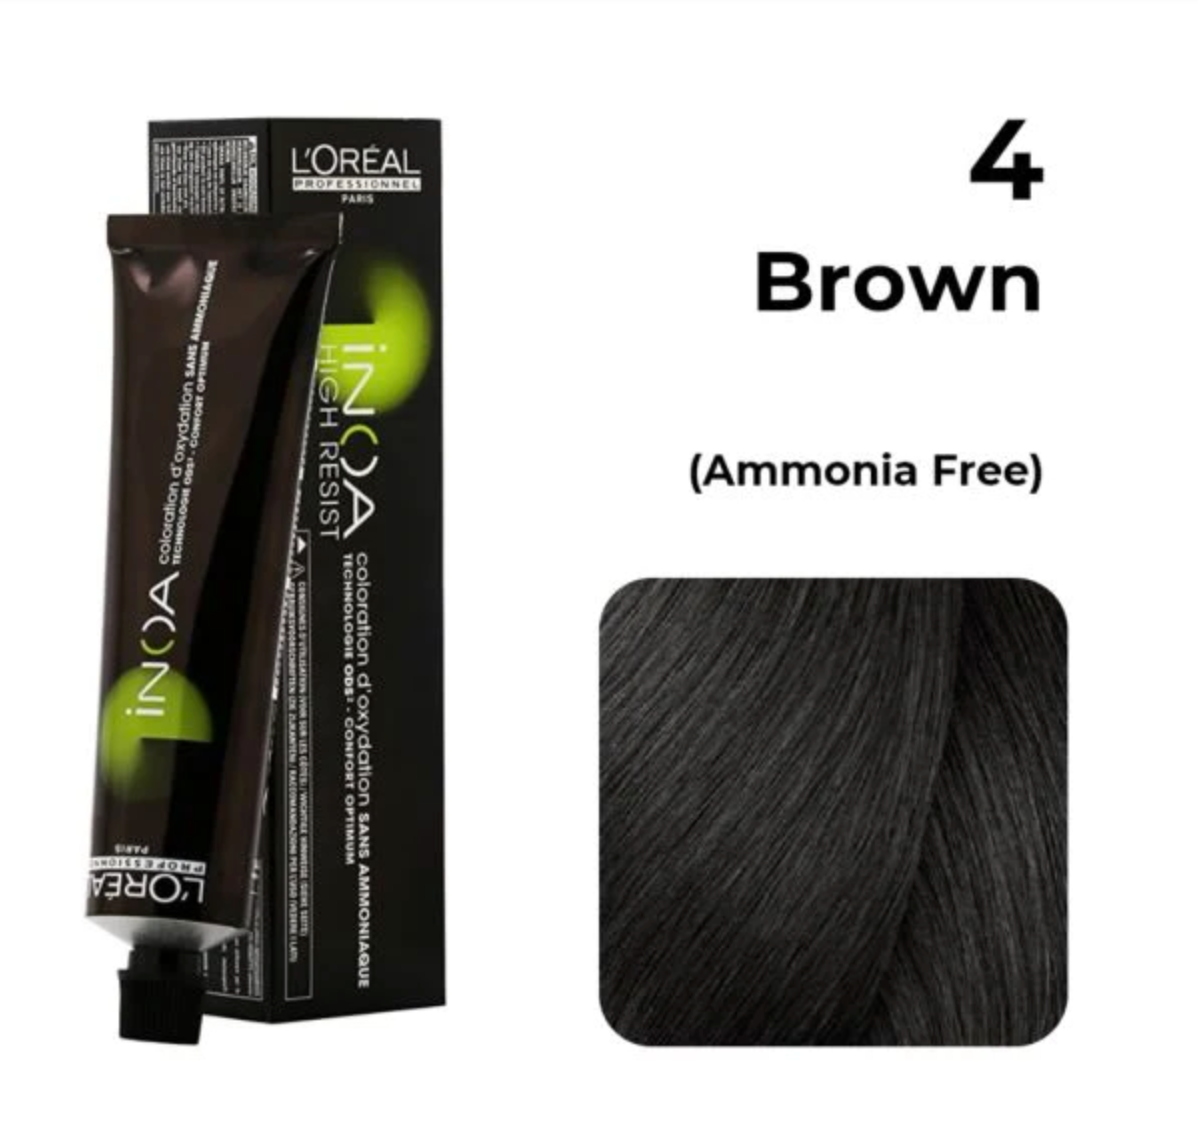 L'Oréal Professionnel INOA Hair Color - 4 Brown (60g)